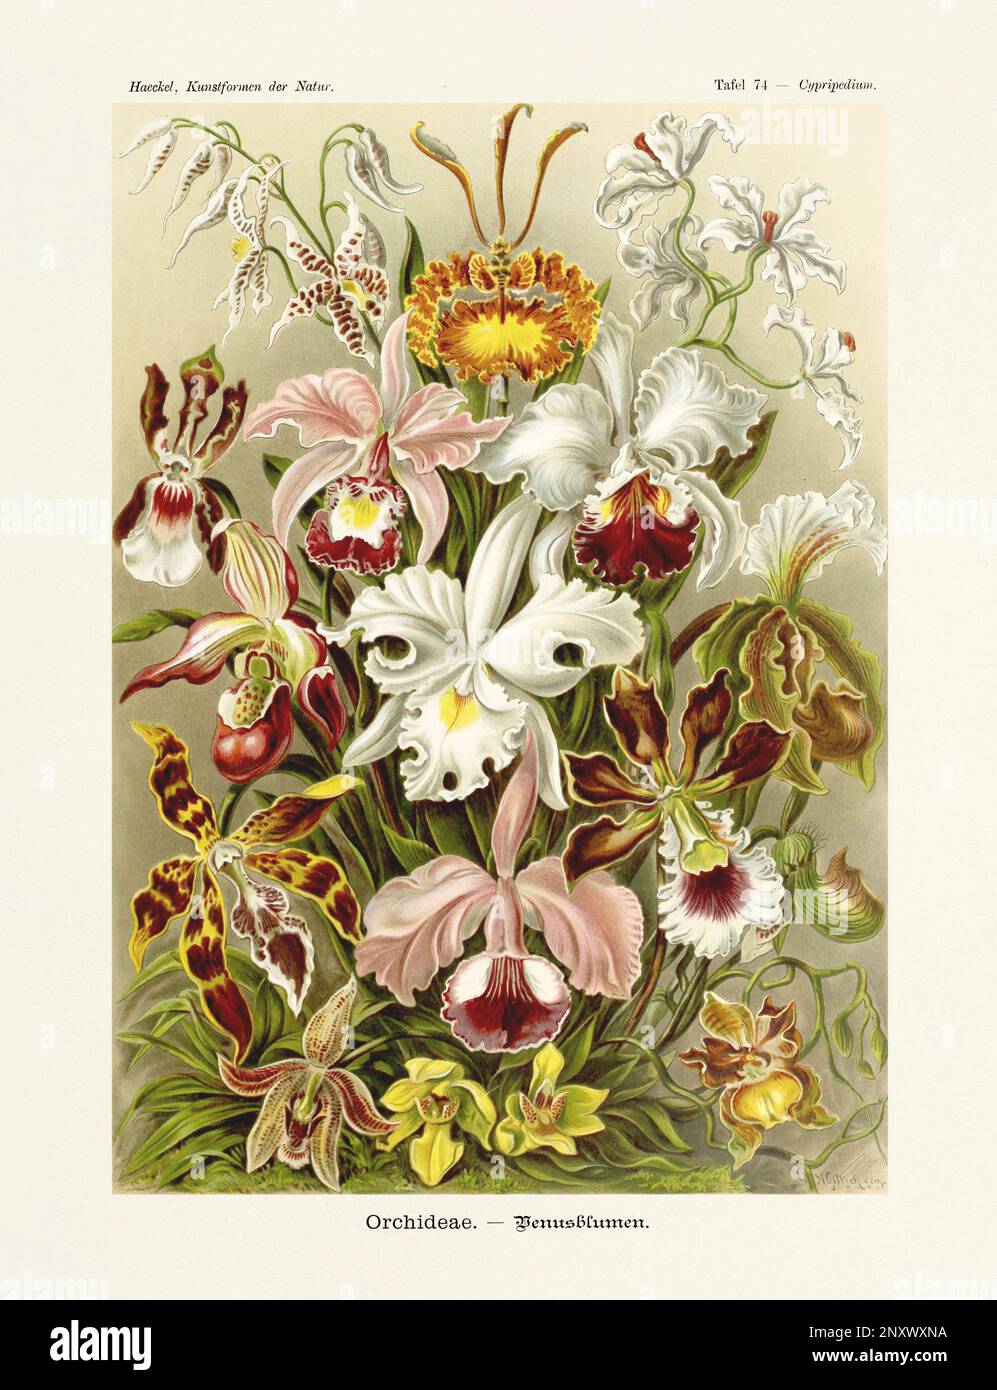 ERNST HAECKEL ART - Orchideen - 19. Jahrhundert - antiker Botanik Illustration - Illustrationen des Buches : "Kunstformen in der Natur" Stockfoto